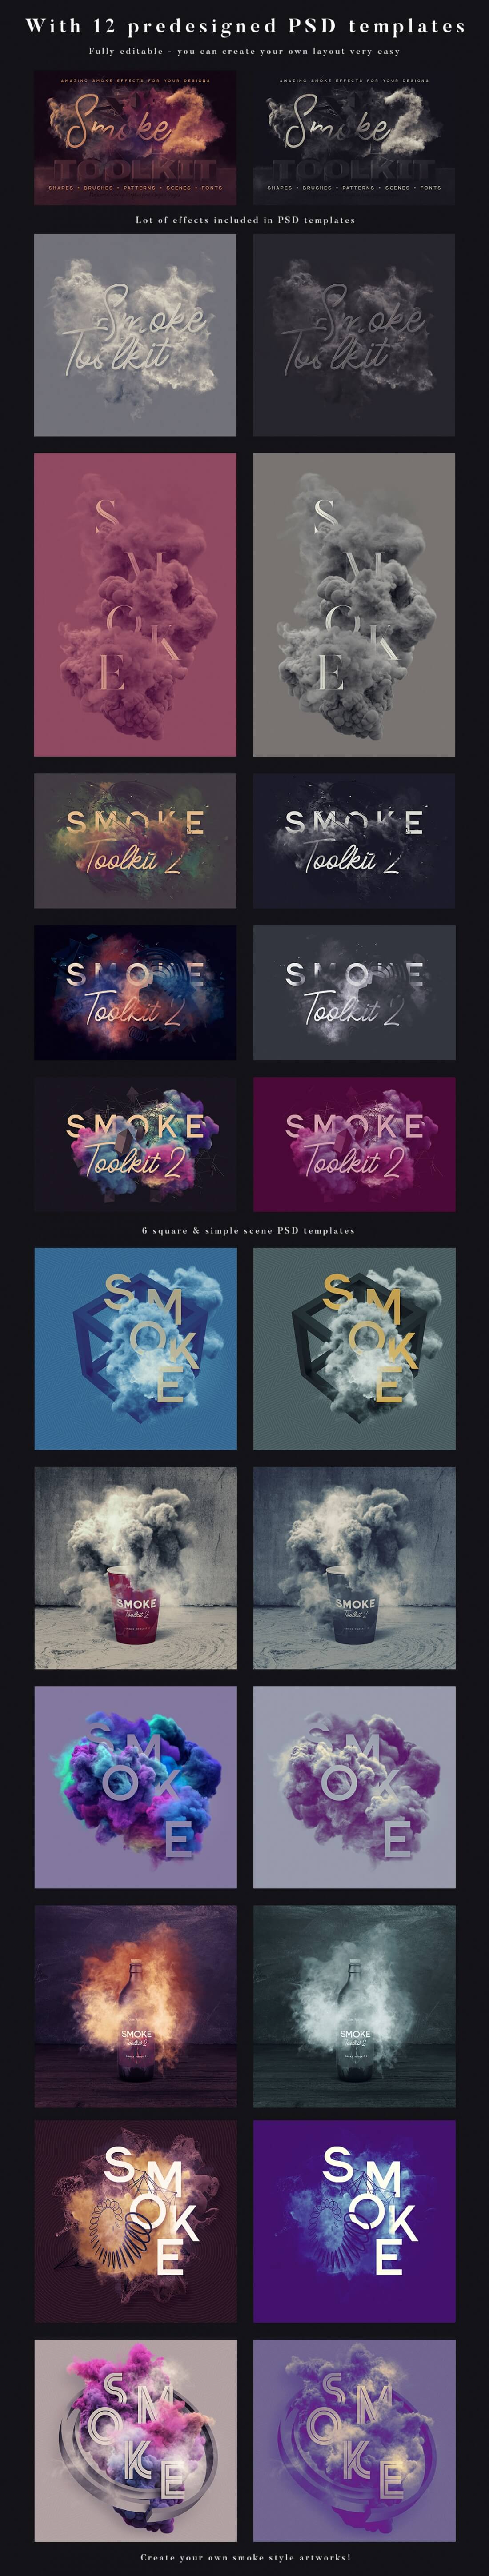 SmokeToolkit3.jpg